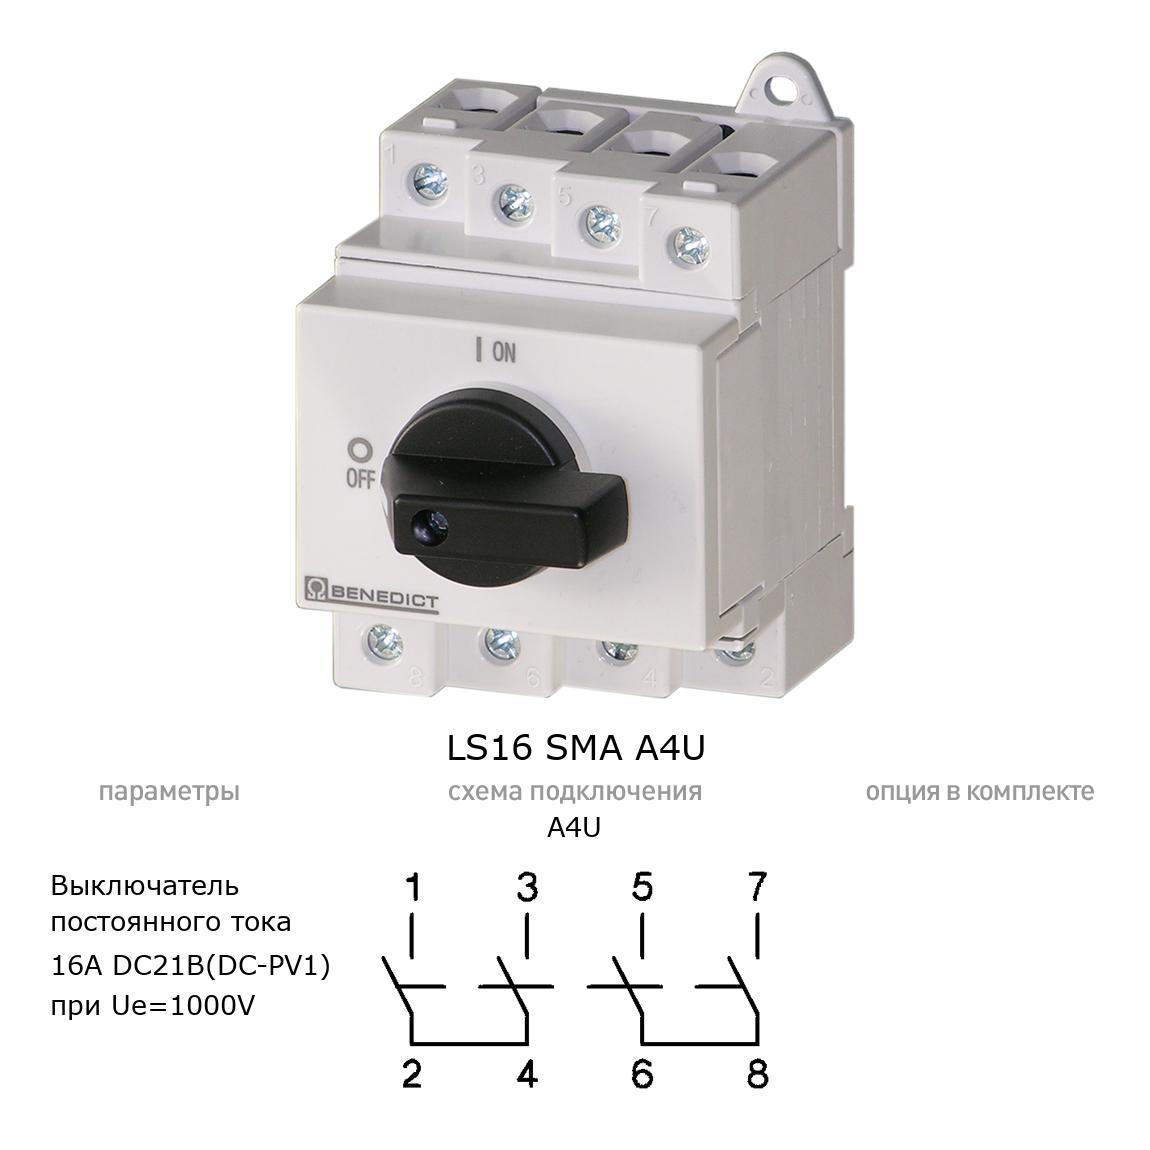 Кулачковый переключатель для постоянного тока (DC) LS16 SMA A4U BENEDICT